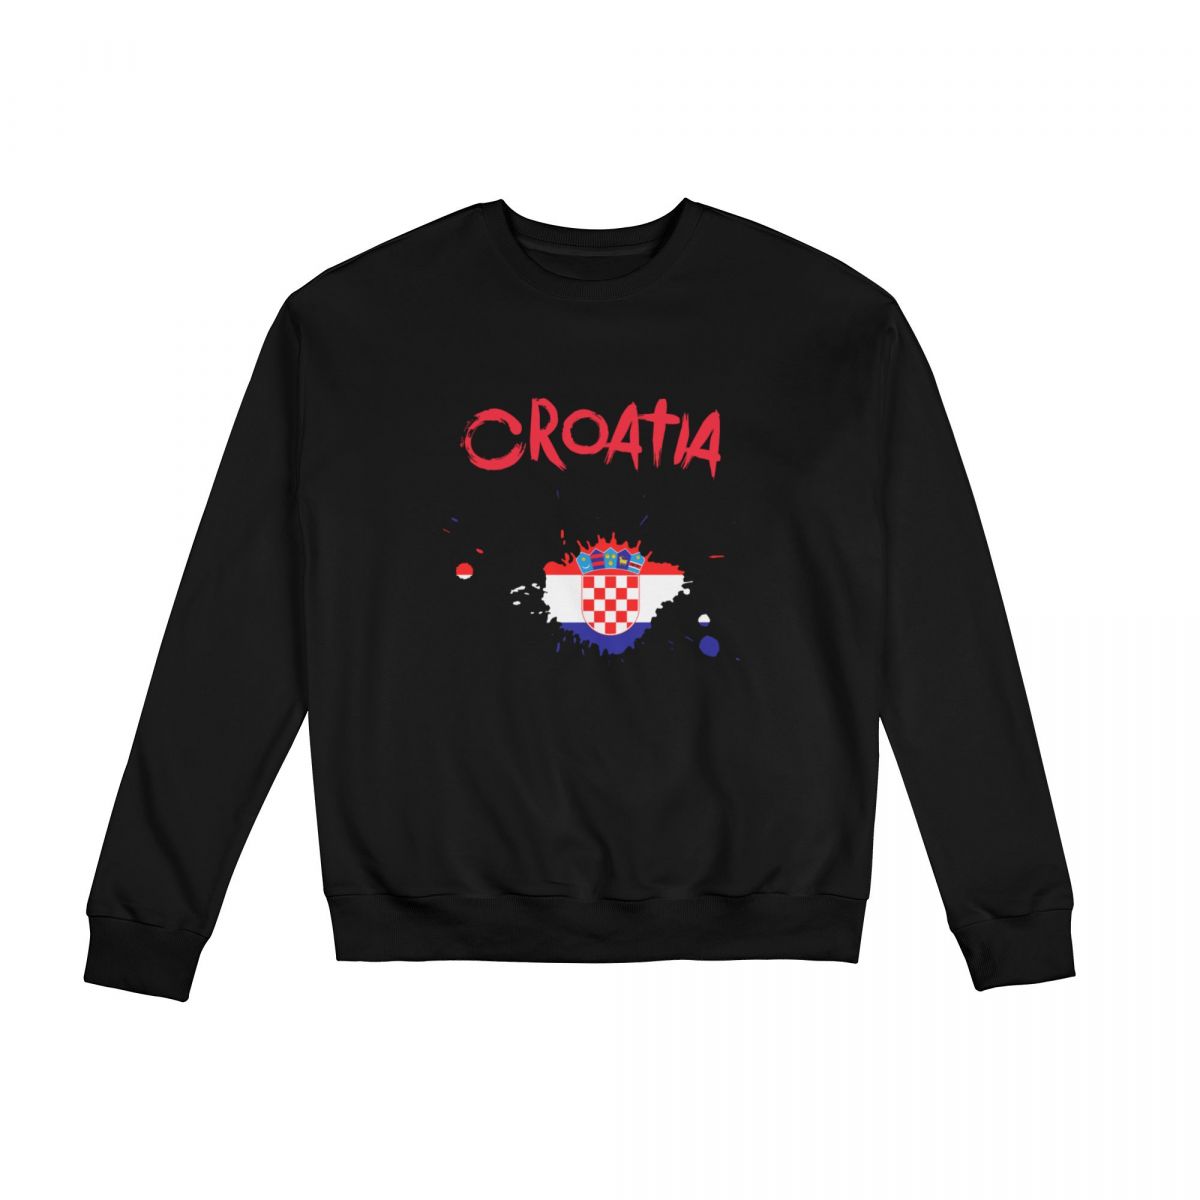 Croatia Ink Spatter Sweatshirt Round Neck Tops